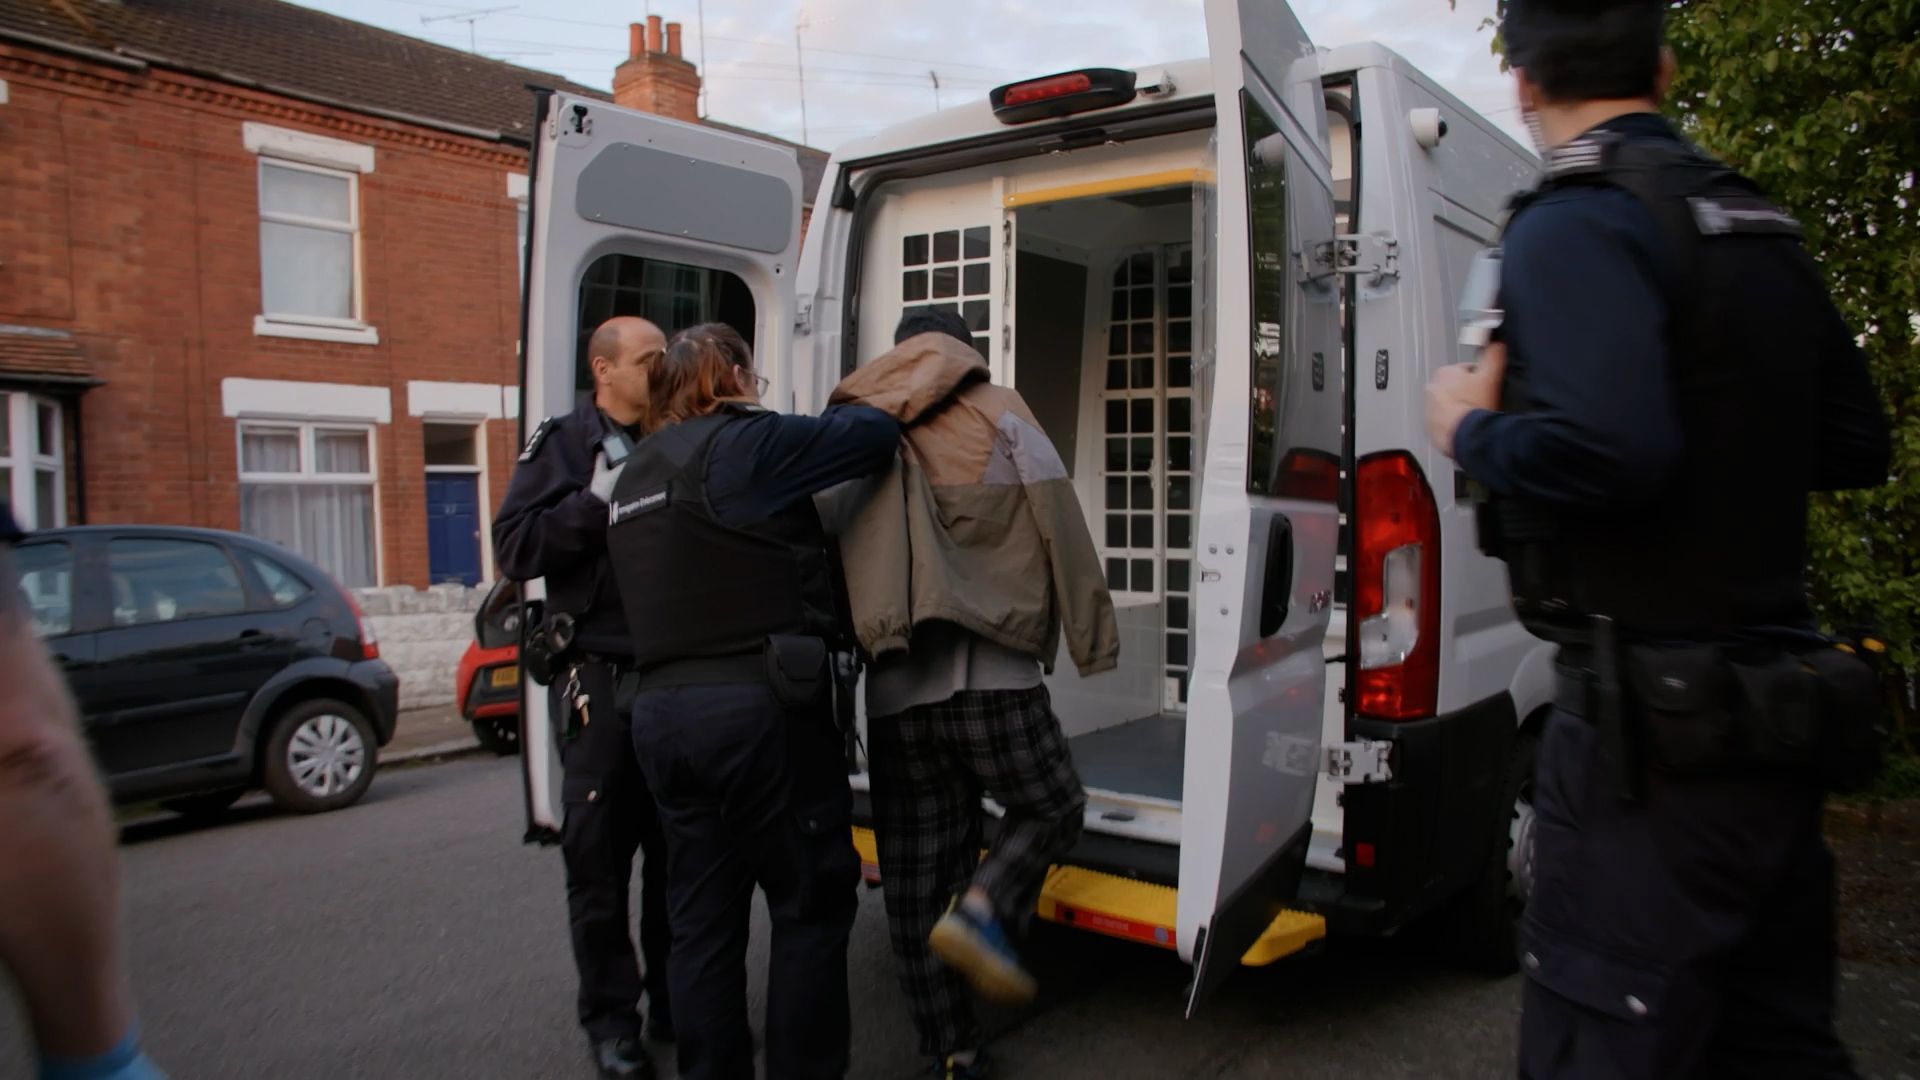 großbritannien: rishi sunak lässt illegal eingereiste menschen festnehmen, um sie abzuschieben